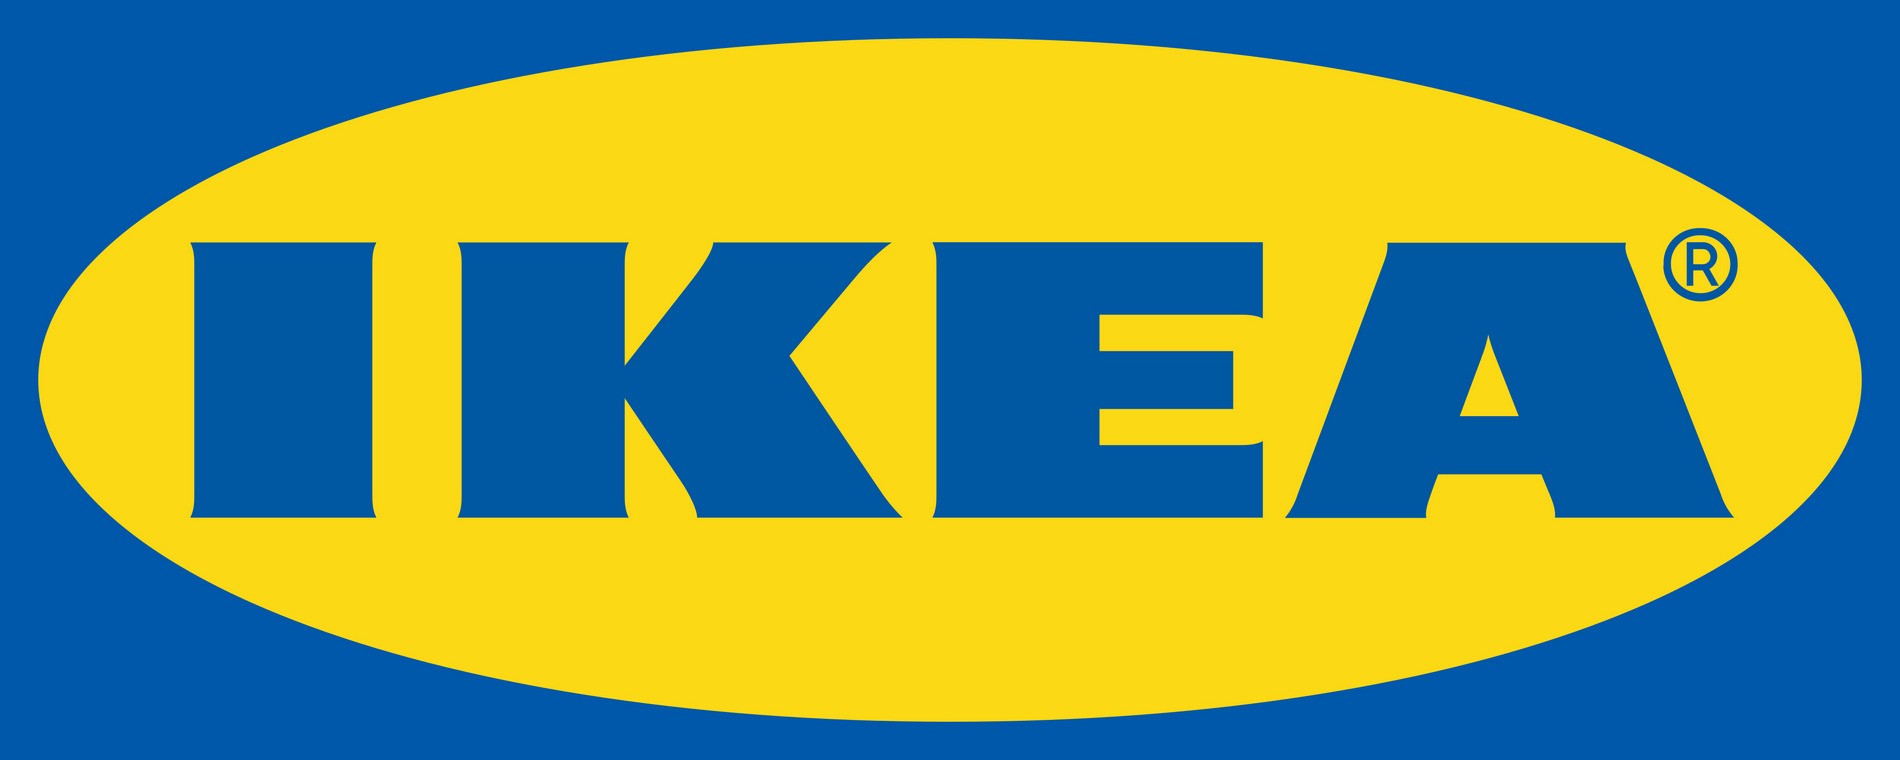 Imagen del logotipo de la marca Ikea para demostrar el concepto de branding